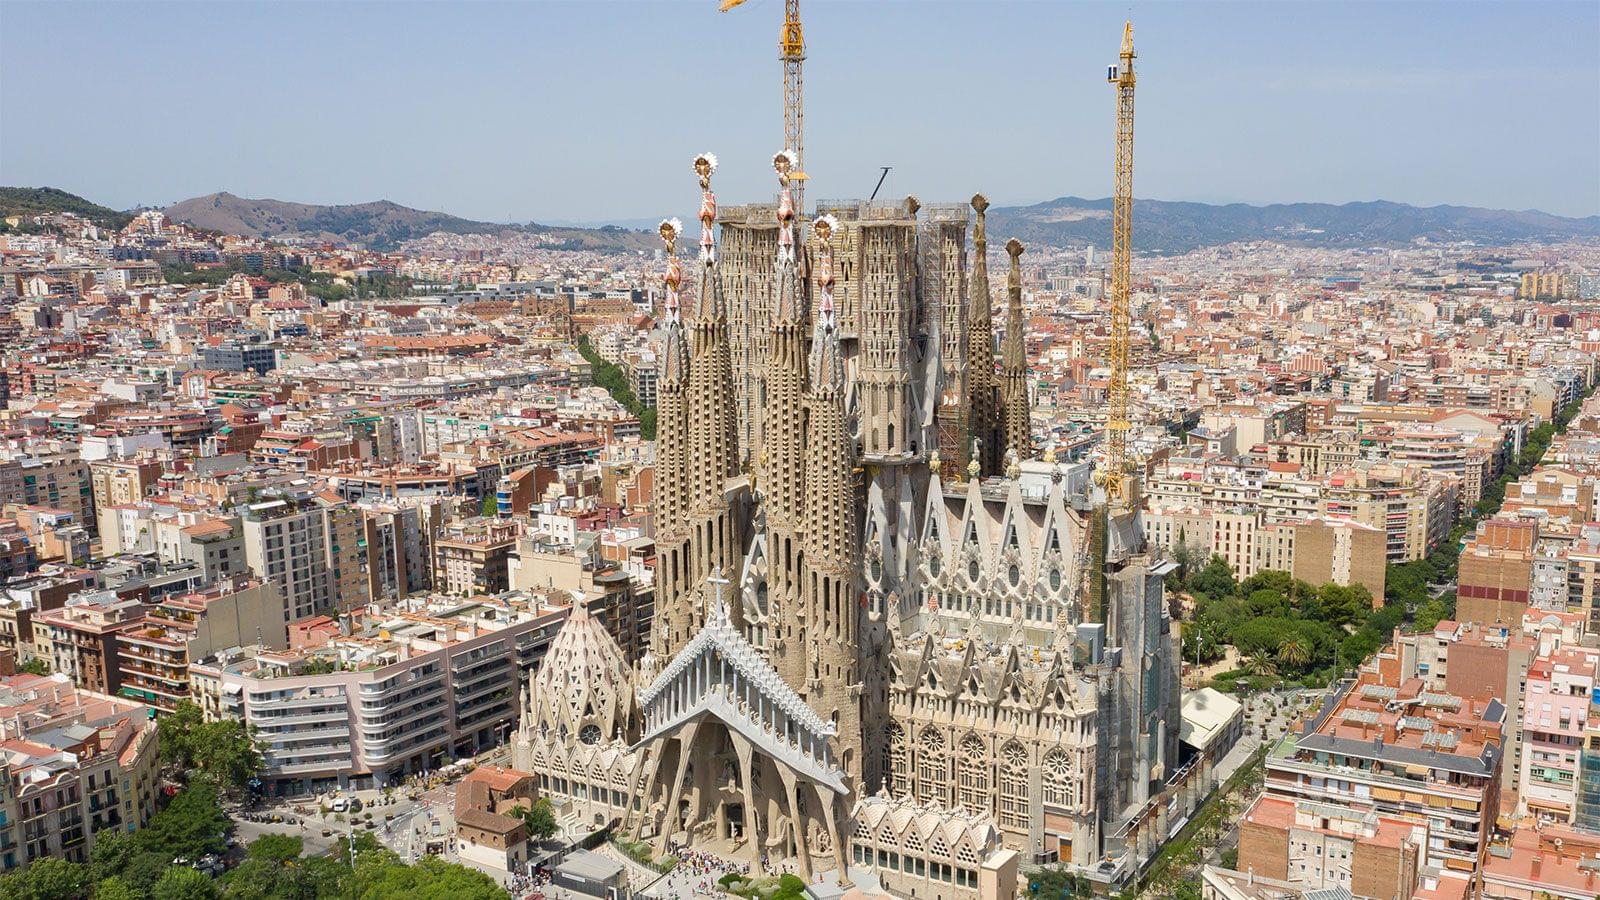 Sagrada Familia Towers & Access